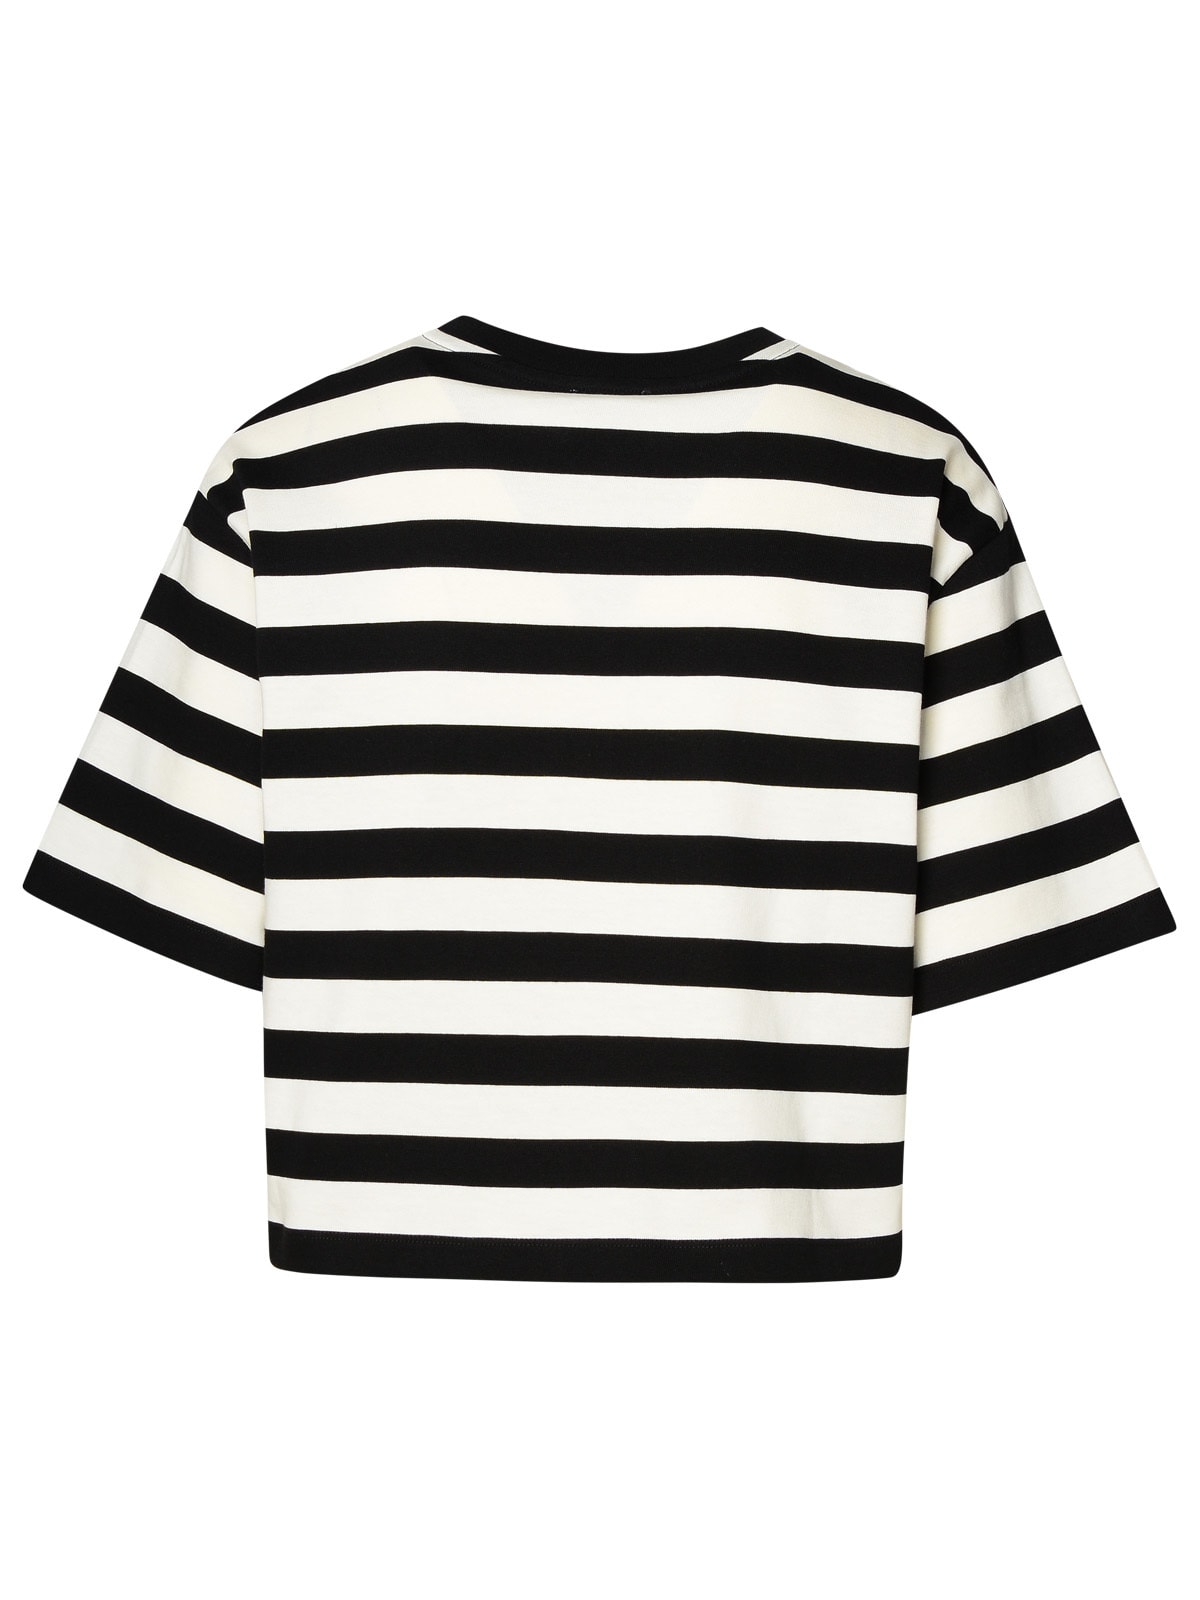 Shop Patou Two-tone Cotton T-shirt In Black Grey